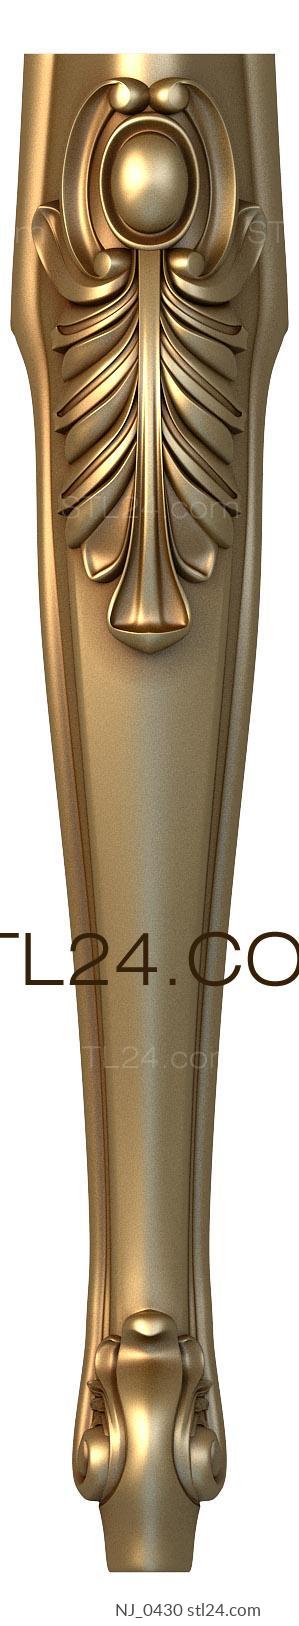 Ножки (NJ_0430) 3D модель для ЧПУ станка